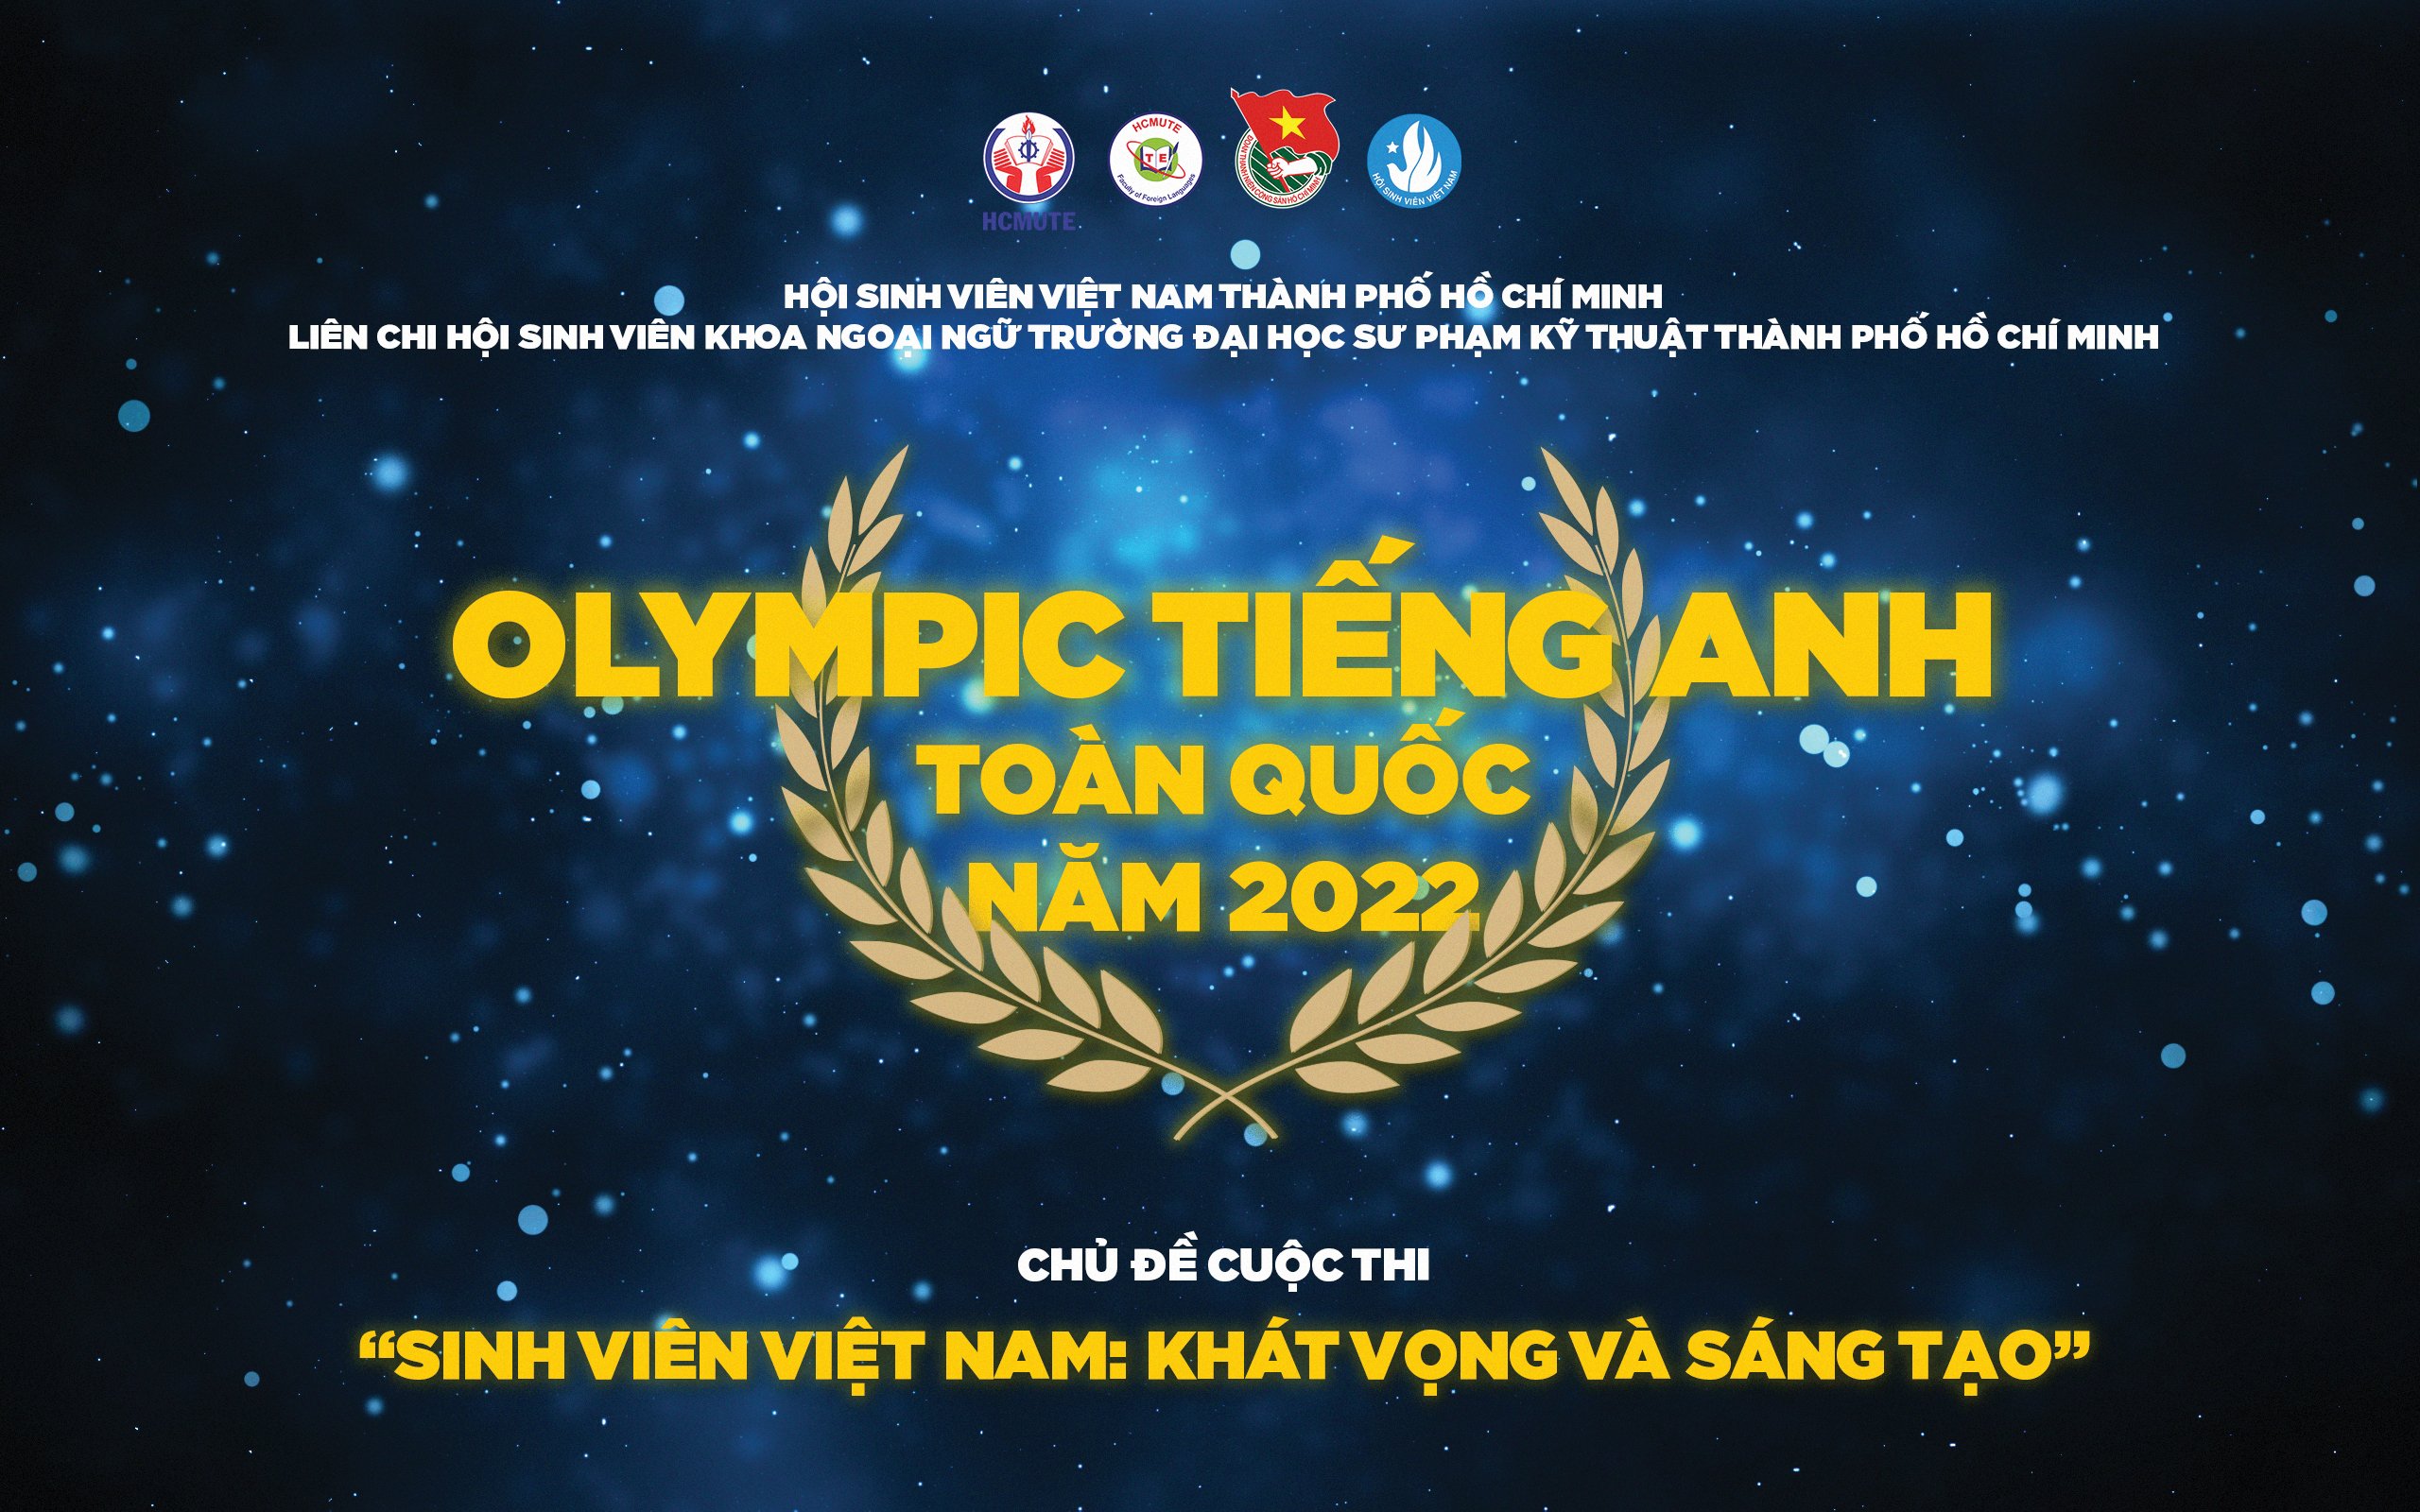 CUỘC THI OLYMPIC TIẾNG ANH CẤP TRƯỜNG 2022